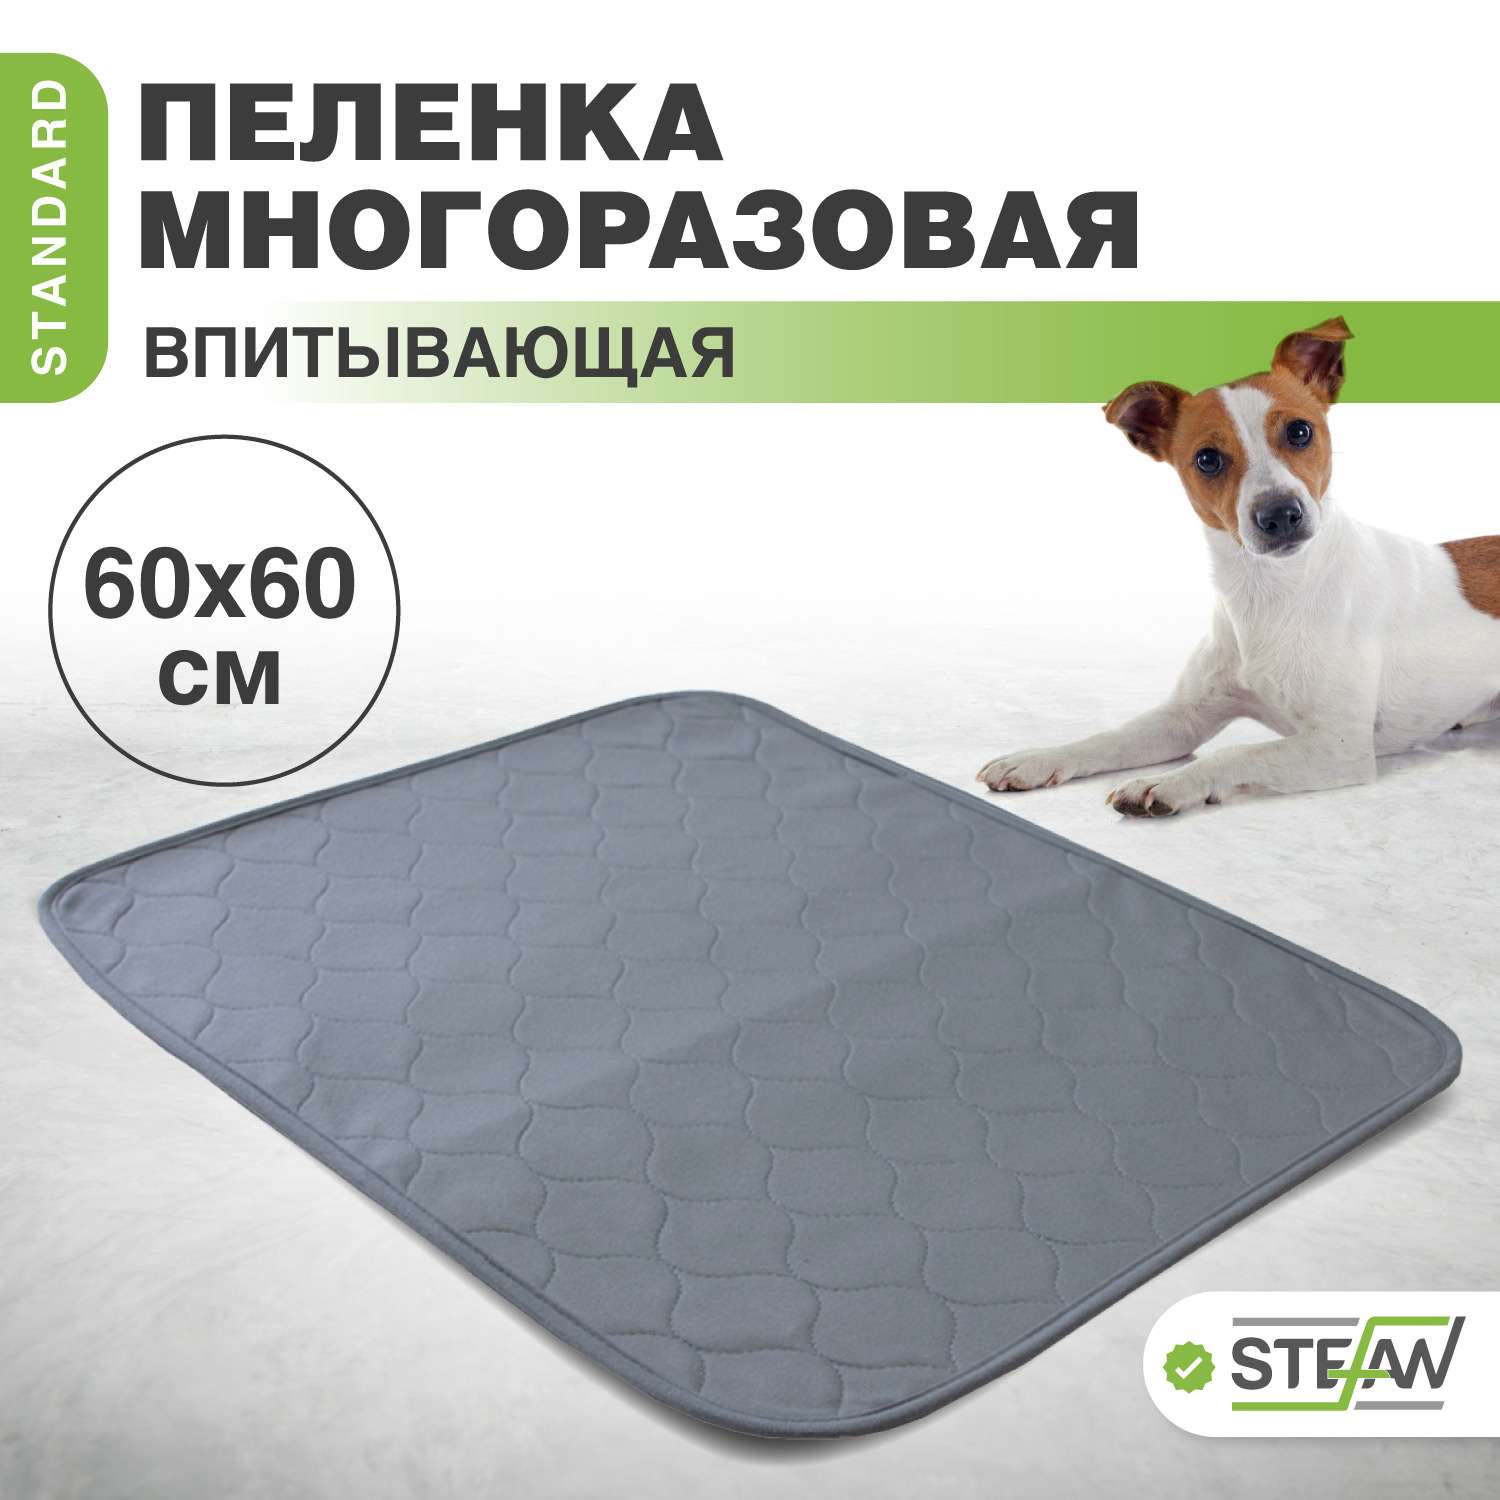 Пеленка для животных Stefan впитывающая многоразовая серая 60х60 см - фото 1